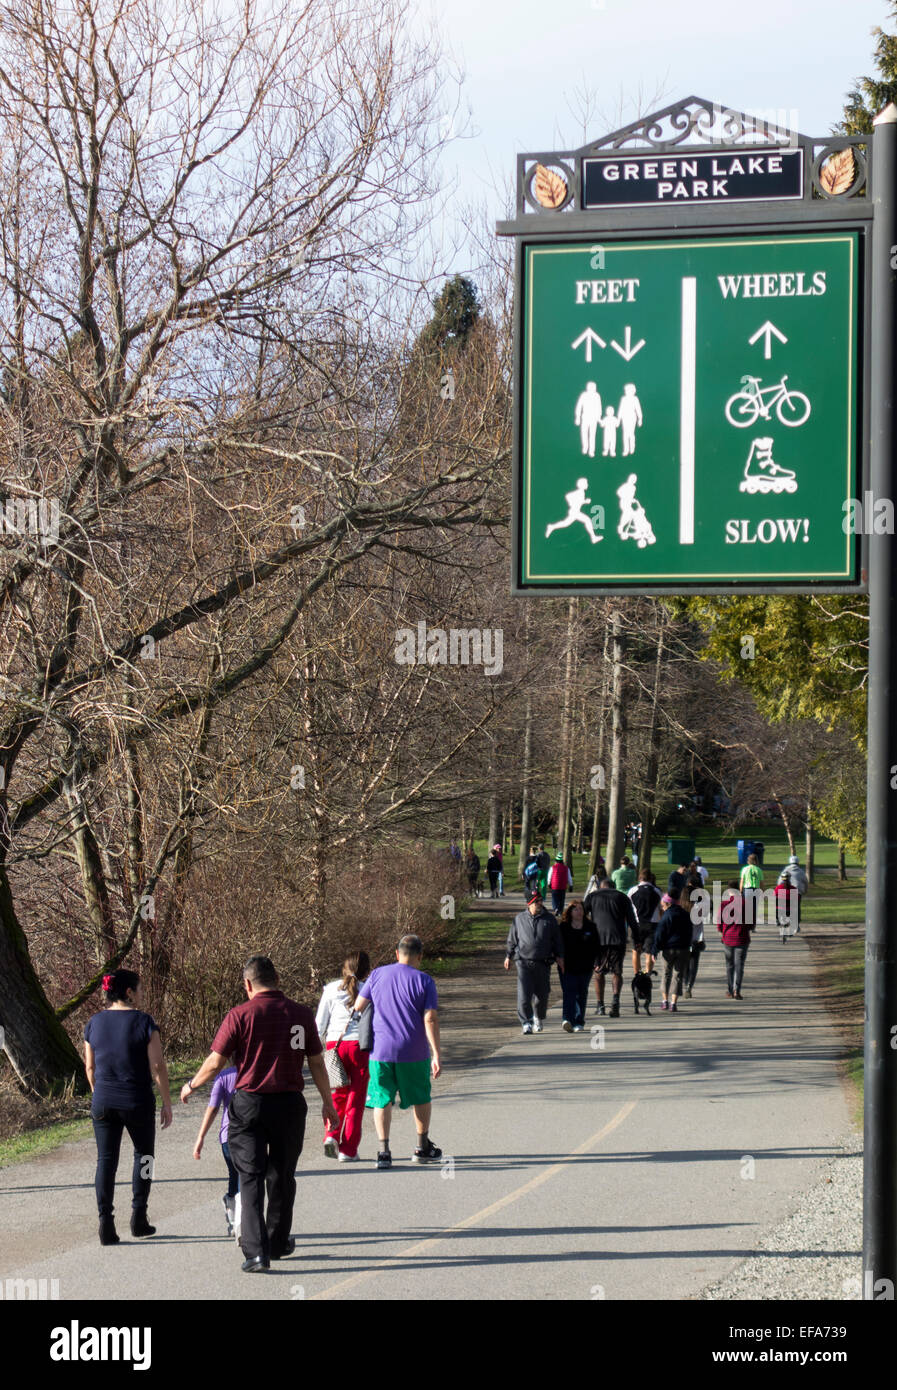 La circulation des piétons et à roues à Green Lake Park, Seattle, Washington State, USA Banque D'Images